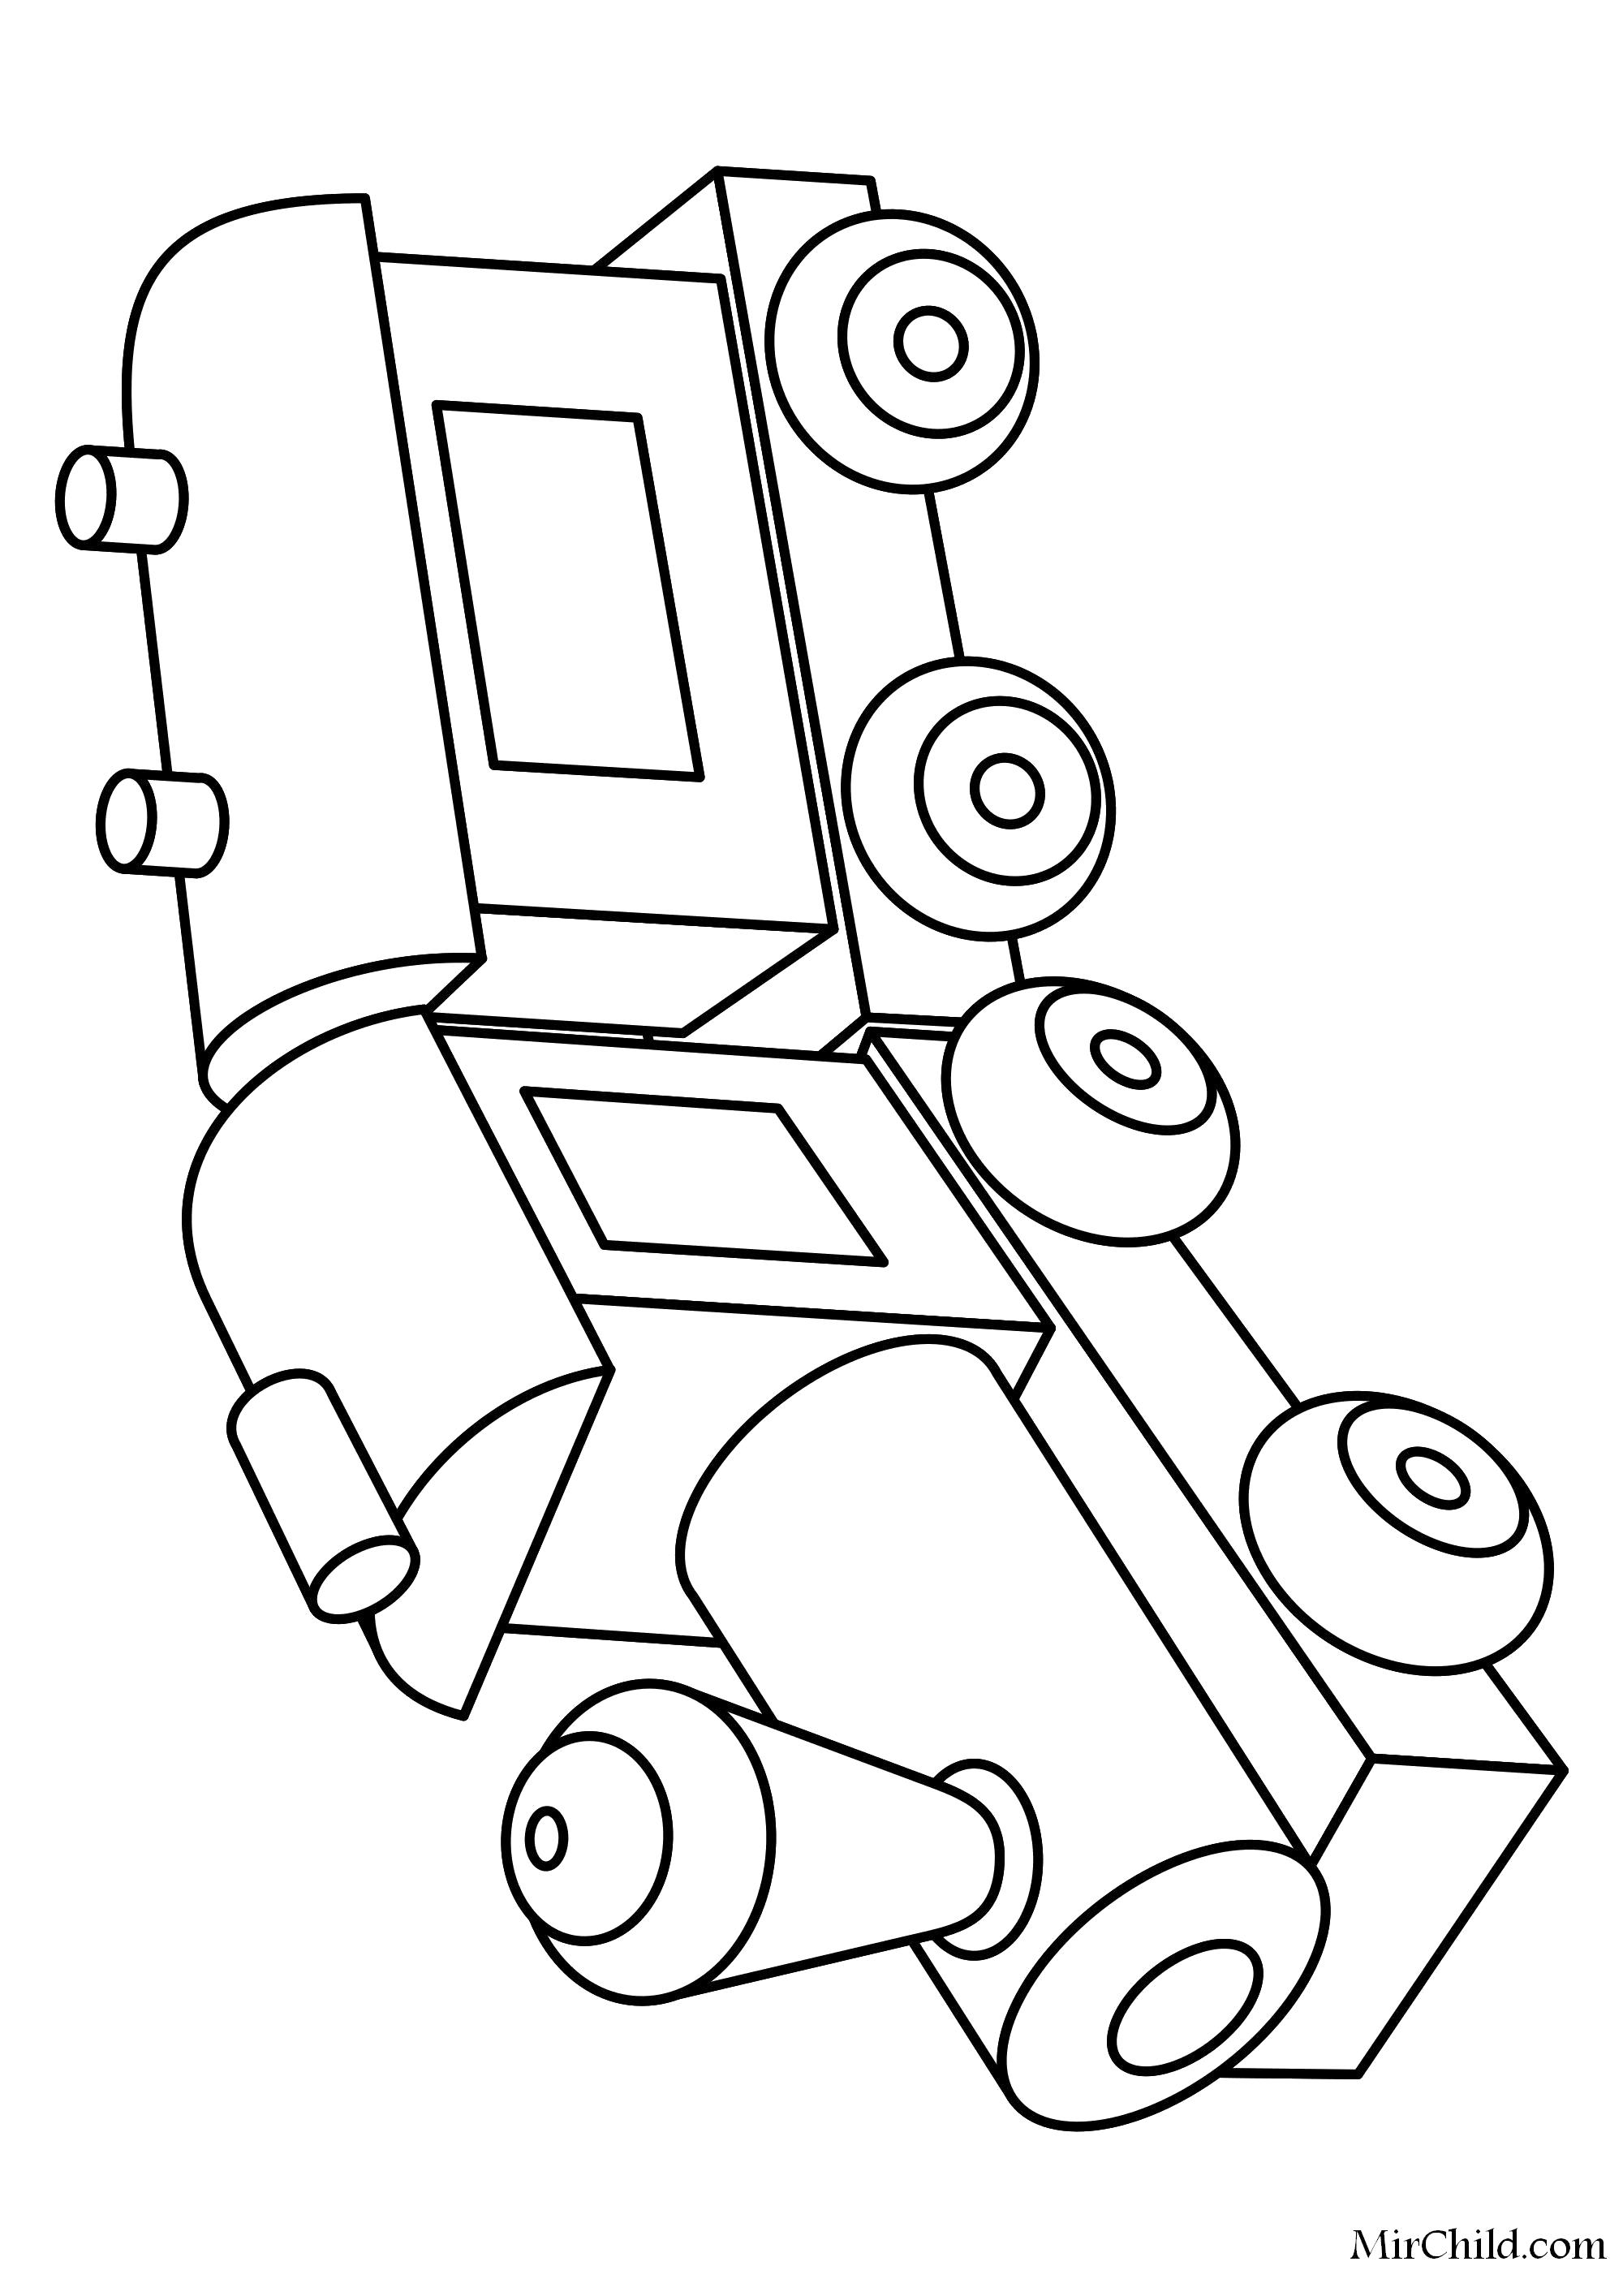 Раскраска Раскраска Игрушка паровозик с вагоном. паровозик